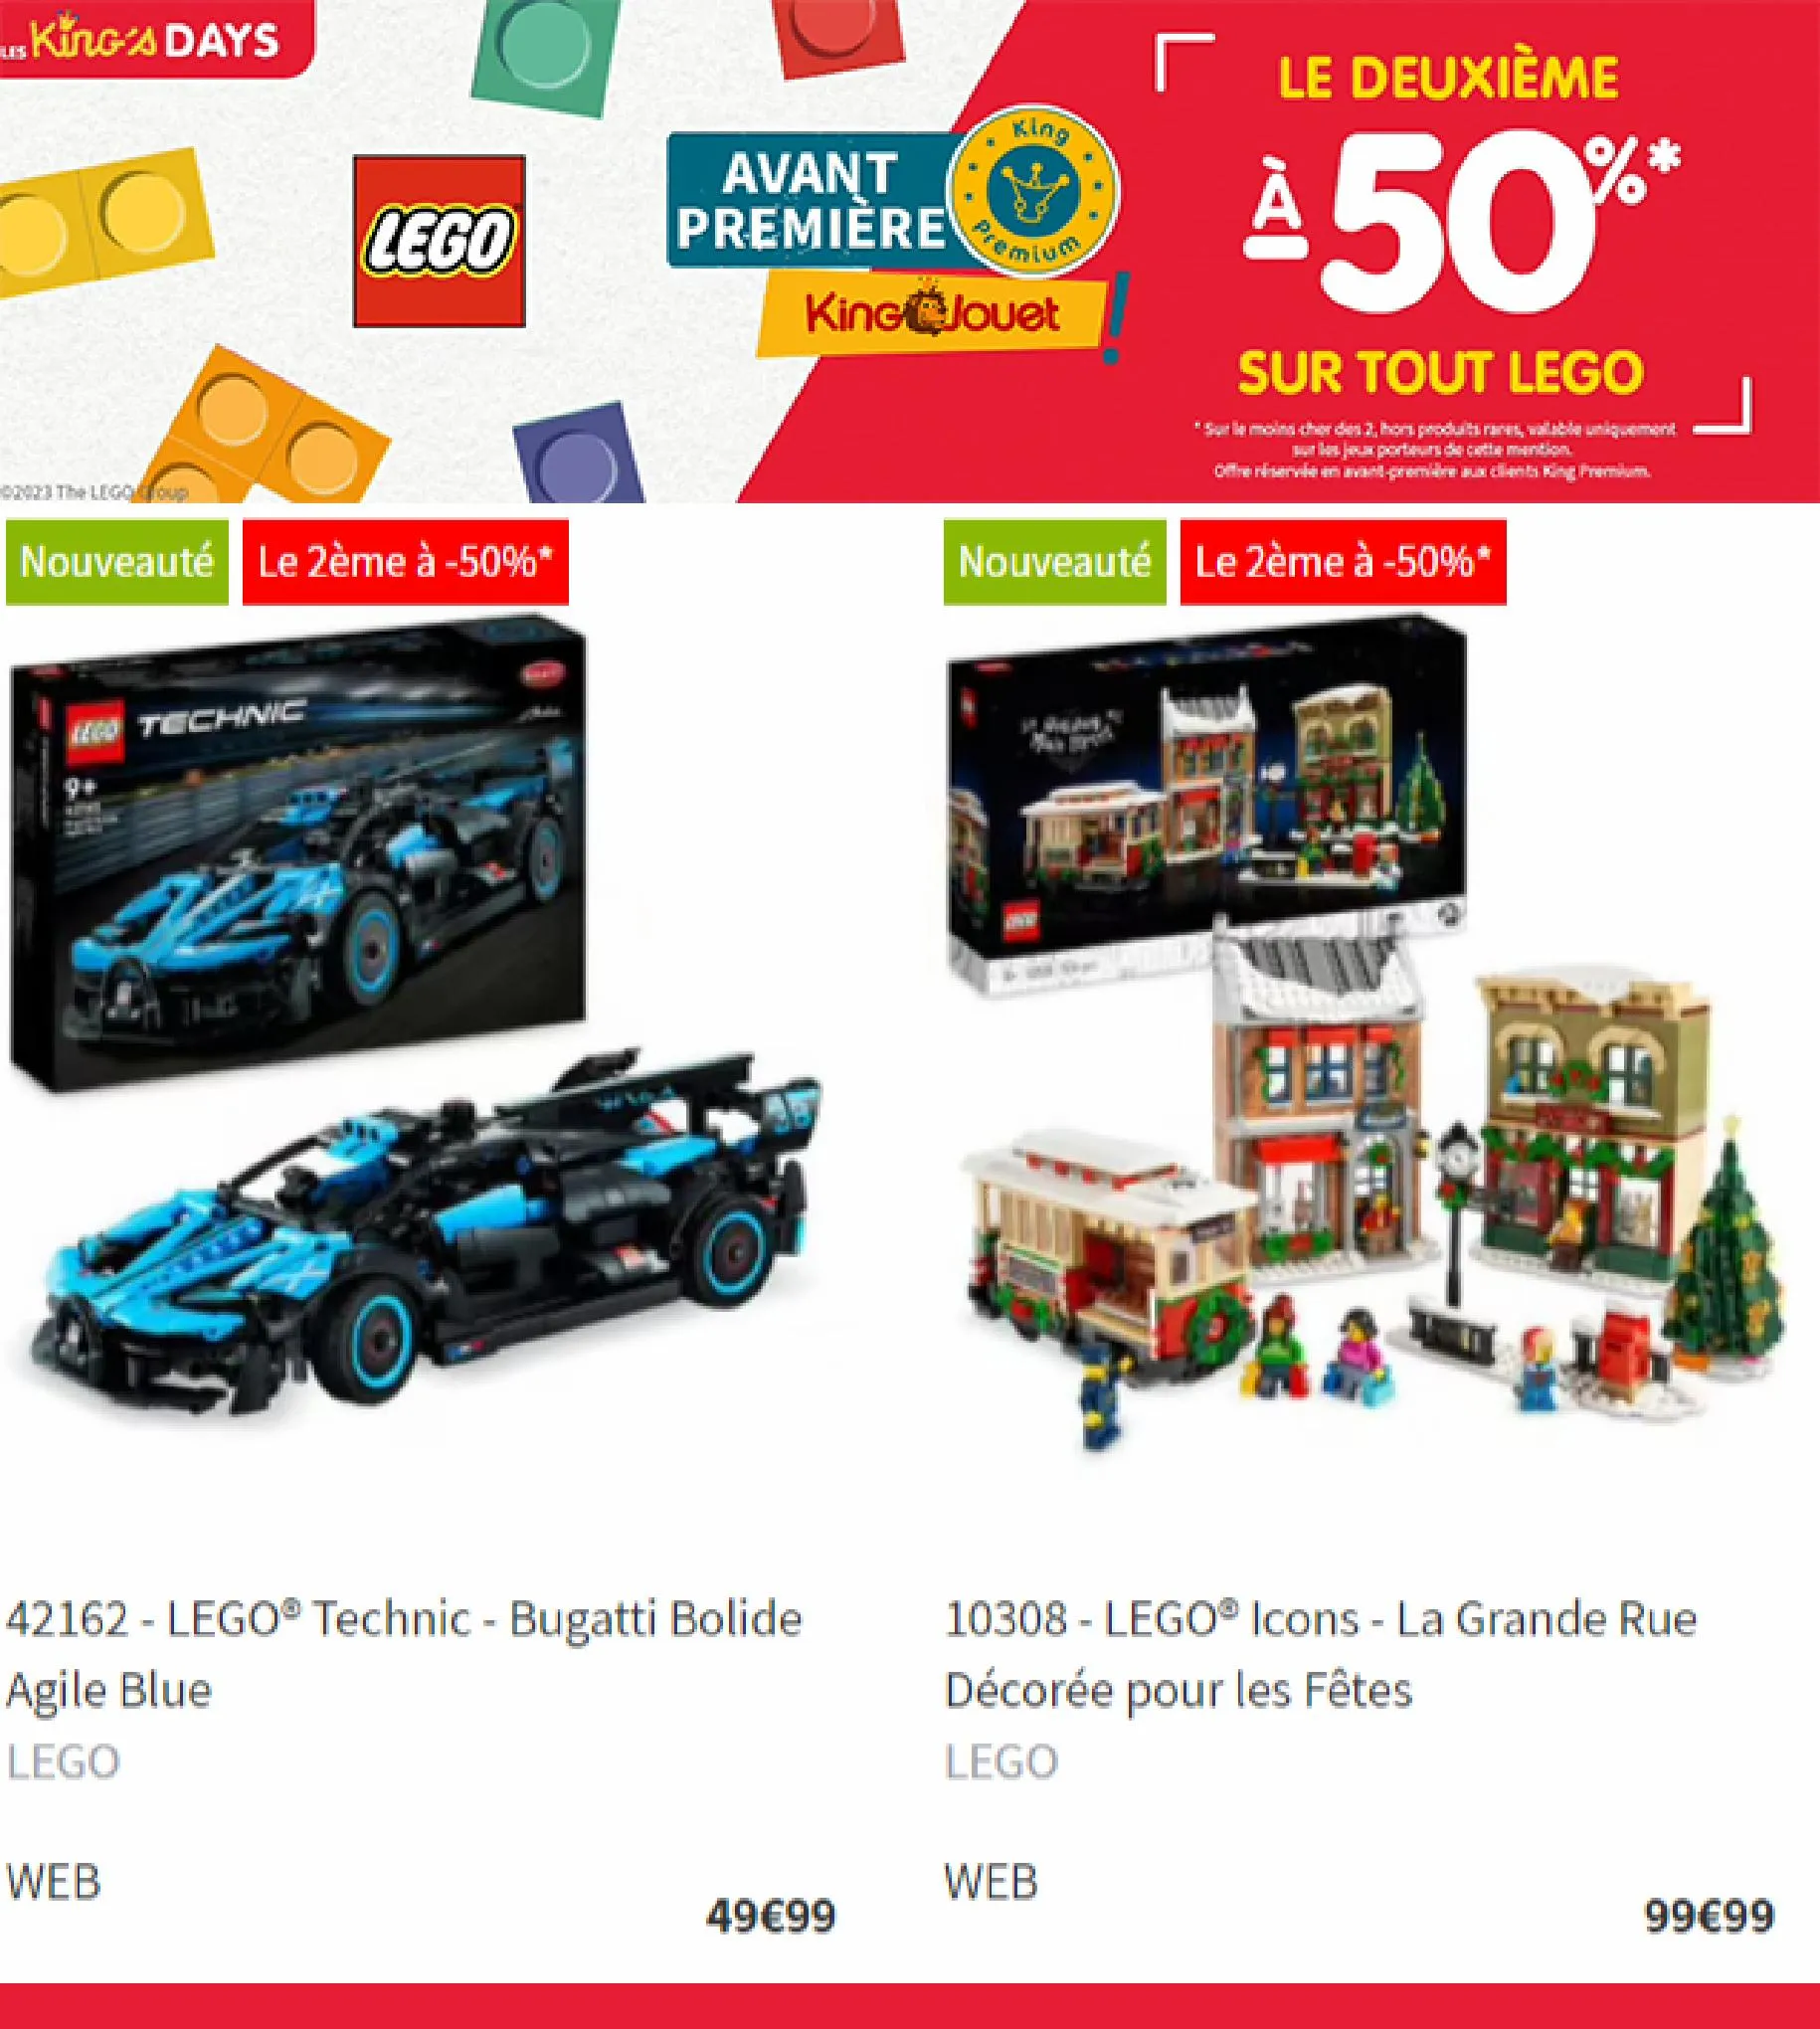 Catalogue Le deuxieme a -50% sur tout LEGO, page 00004